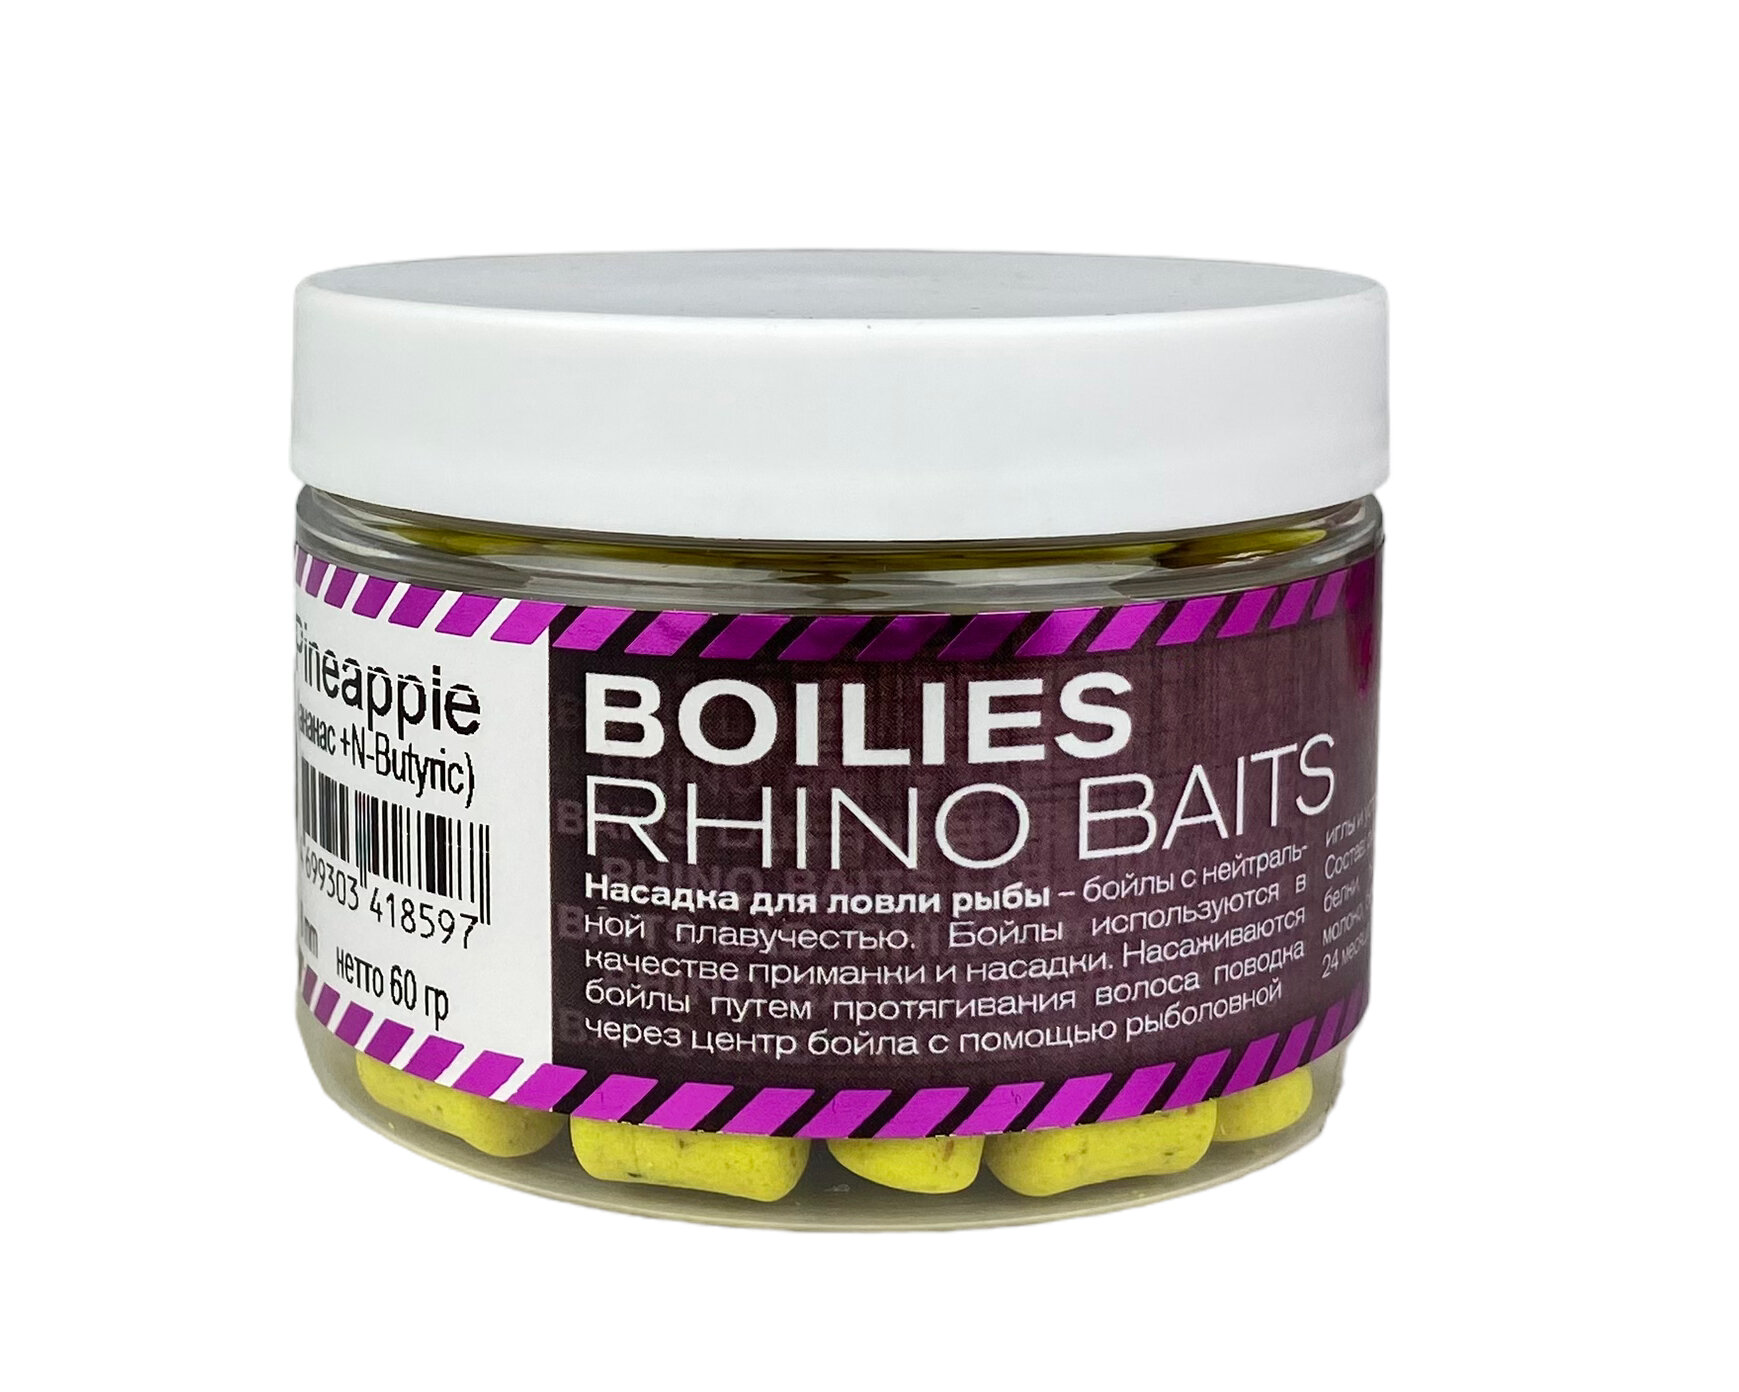 Бойлы Rhino Baits balanced wafters Pineapple ананас+N-Butyric 8мм 60гр банка